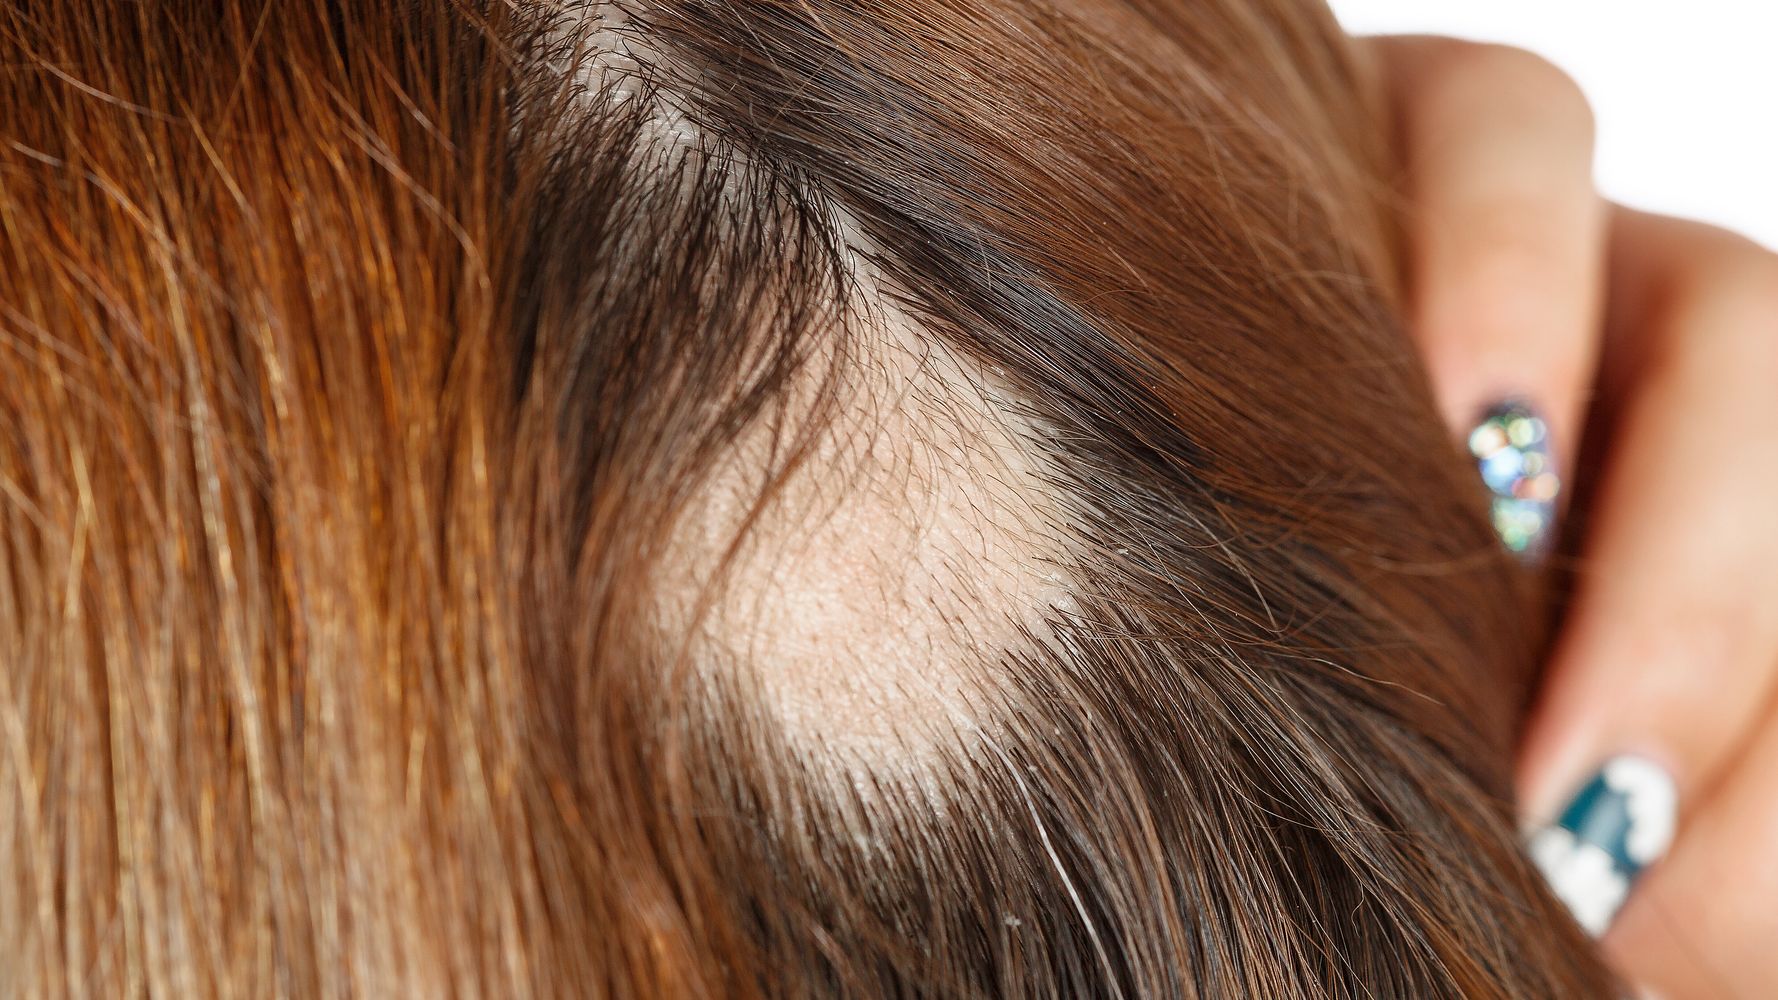 mujeres también sufren la alopecia: son los mejores tratamientos | El HuffPost Life